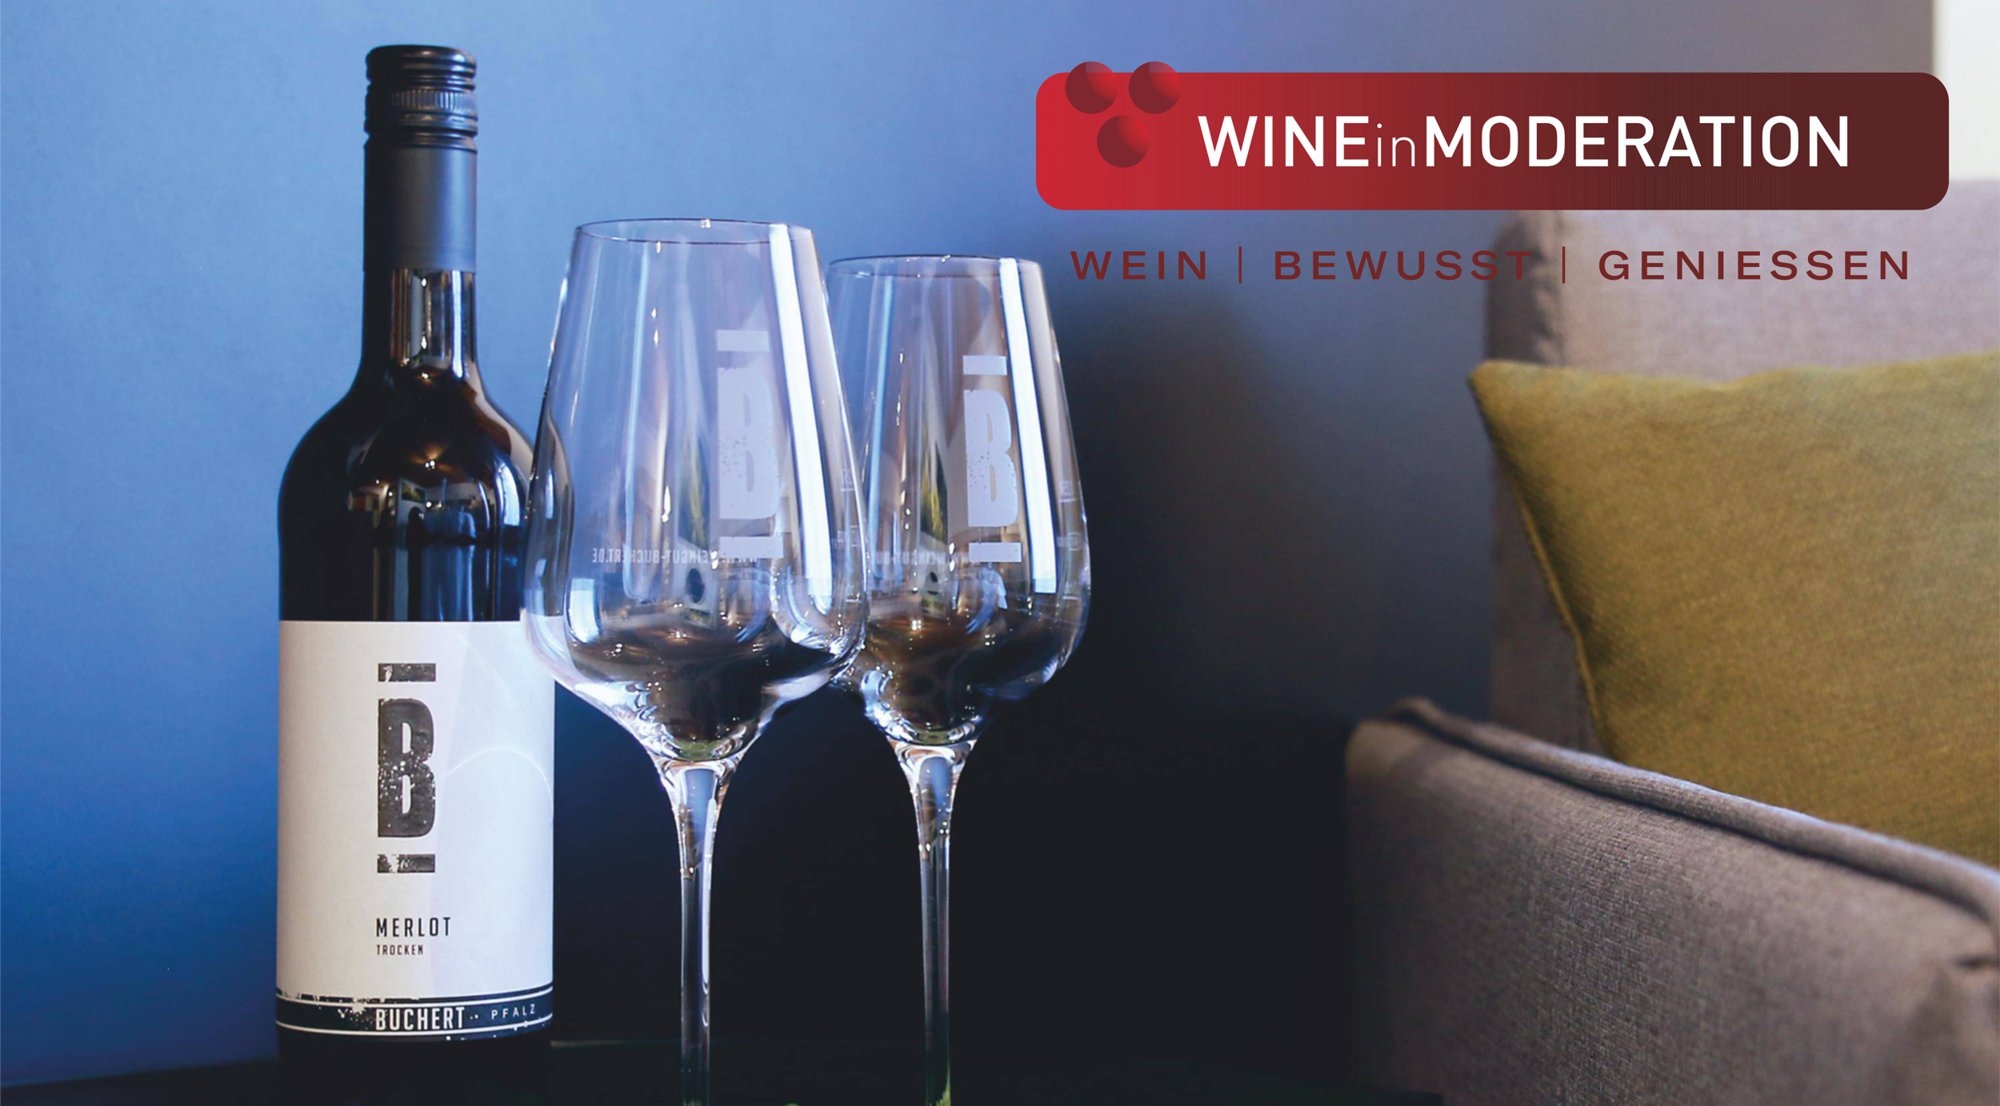 Wine in Moderation Weingut Buchert